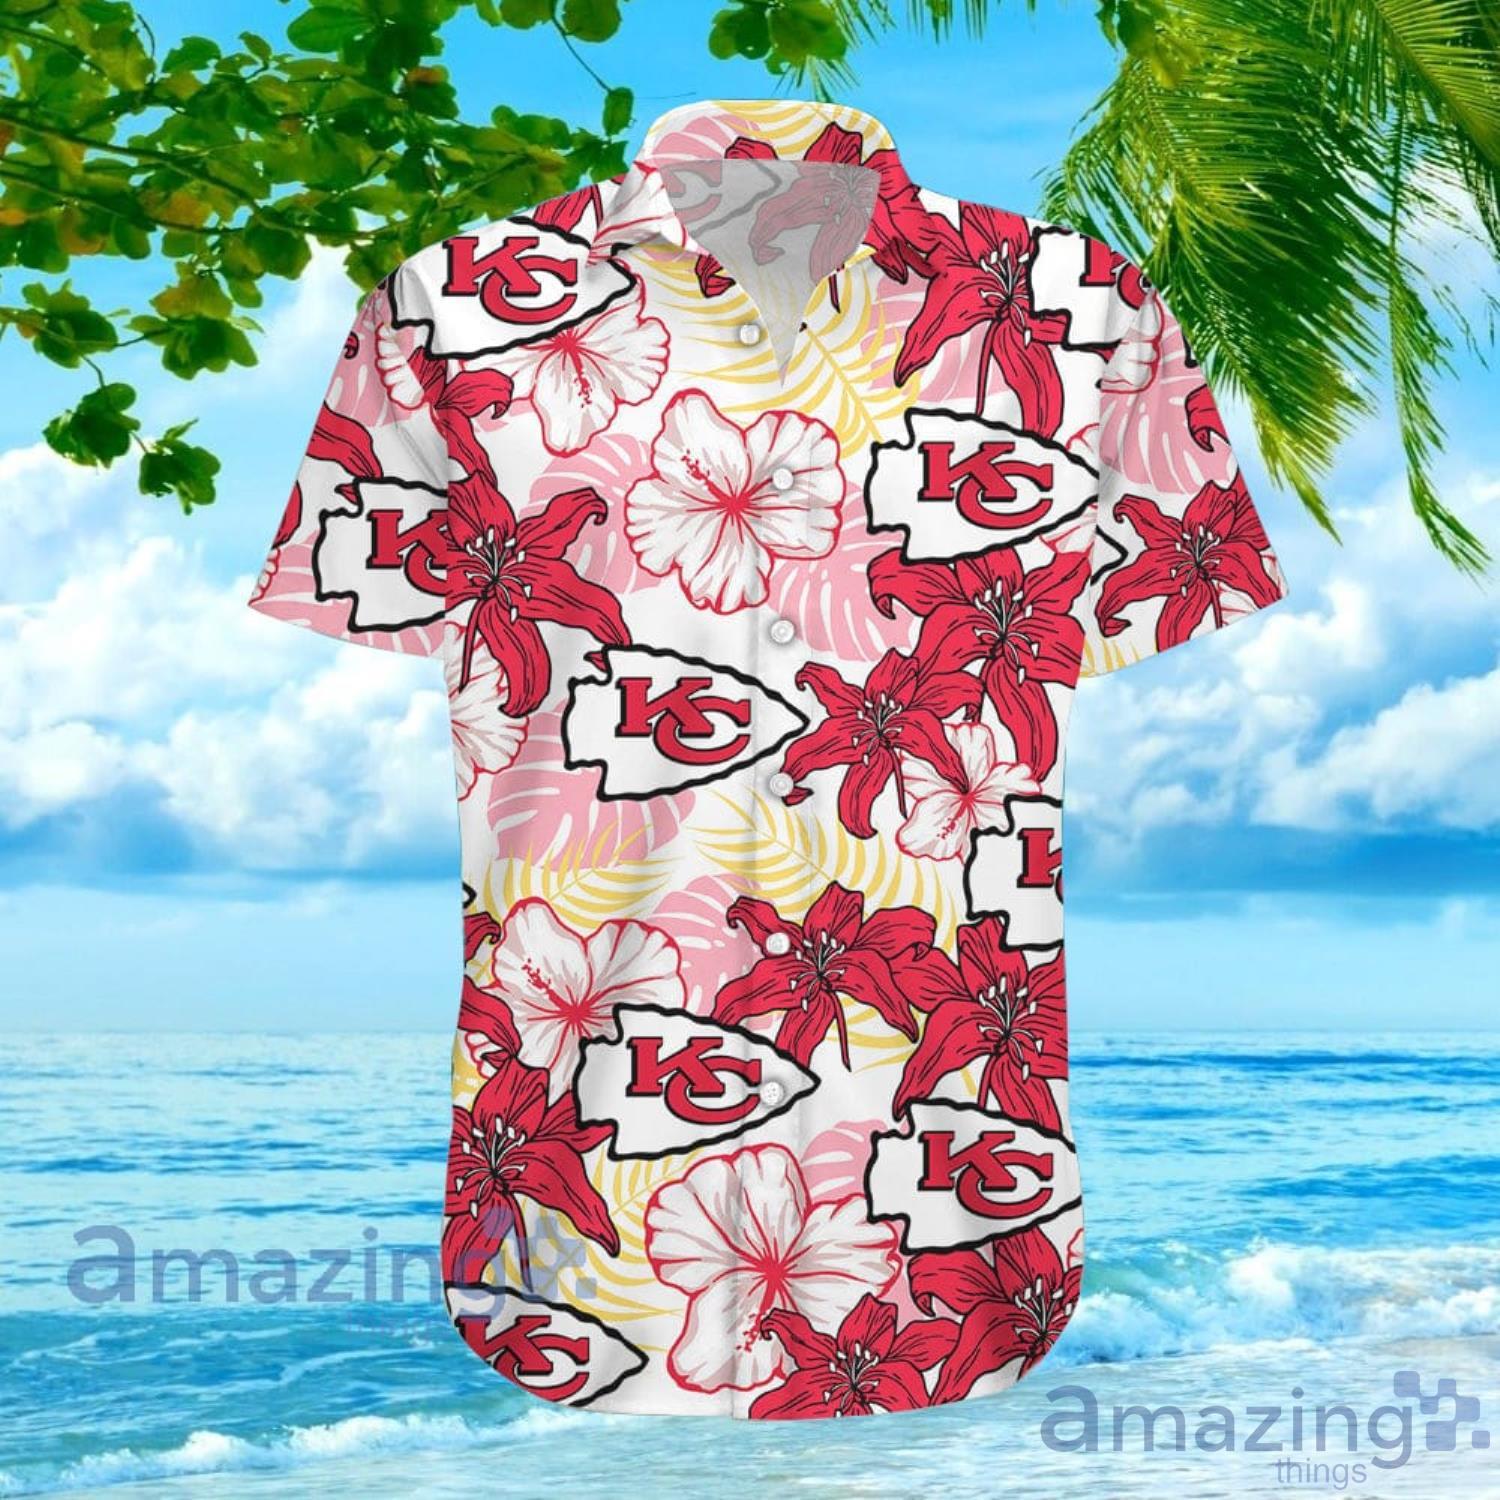 NFL Kansas City Chiefs Fans Louis Vuitton Hawaiian Shirt For Men And Women